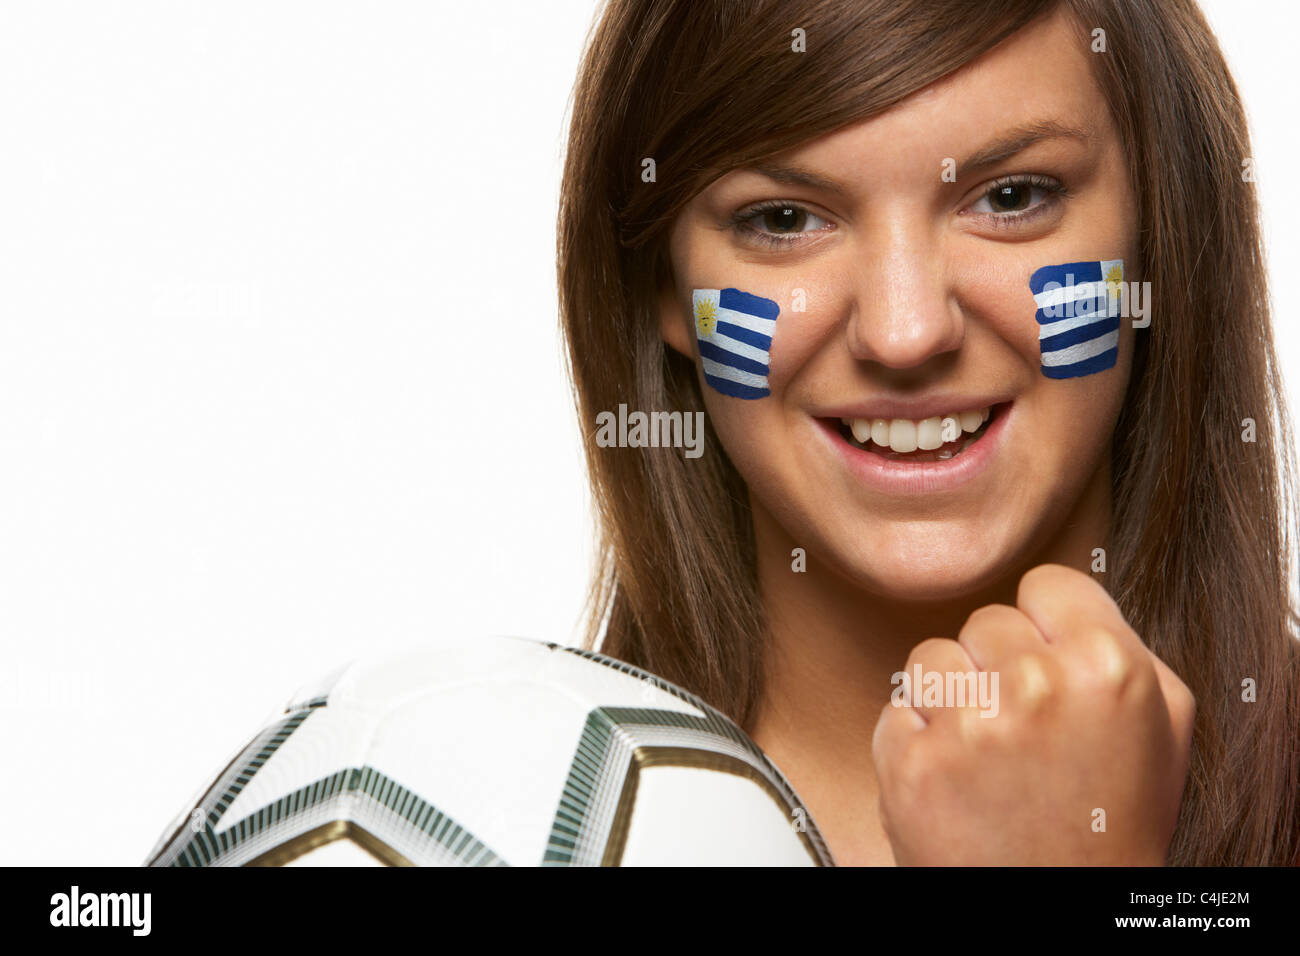 Junge weibliche Fußball-Fan mit uruguayische Flagge auf Gesicht gemalt Stockfoto